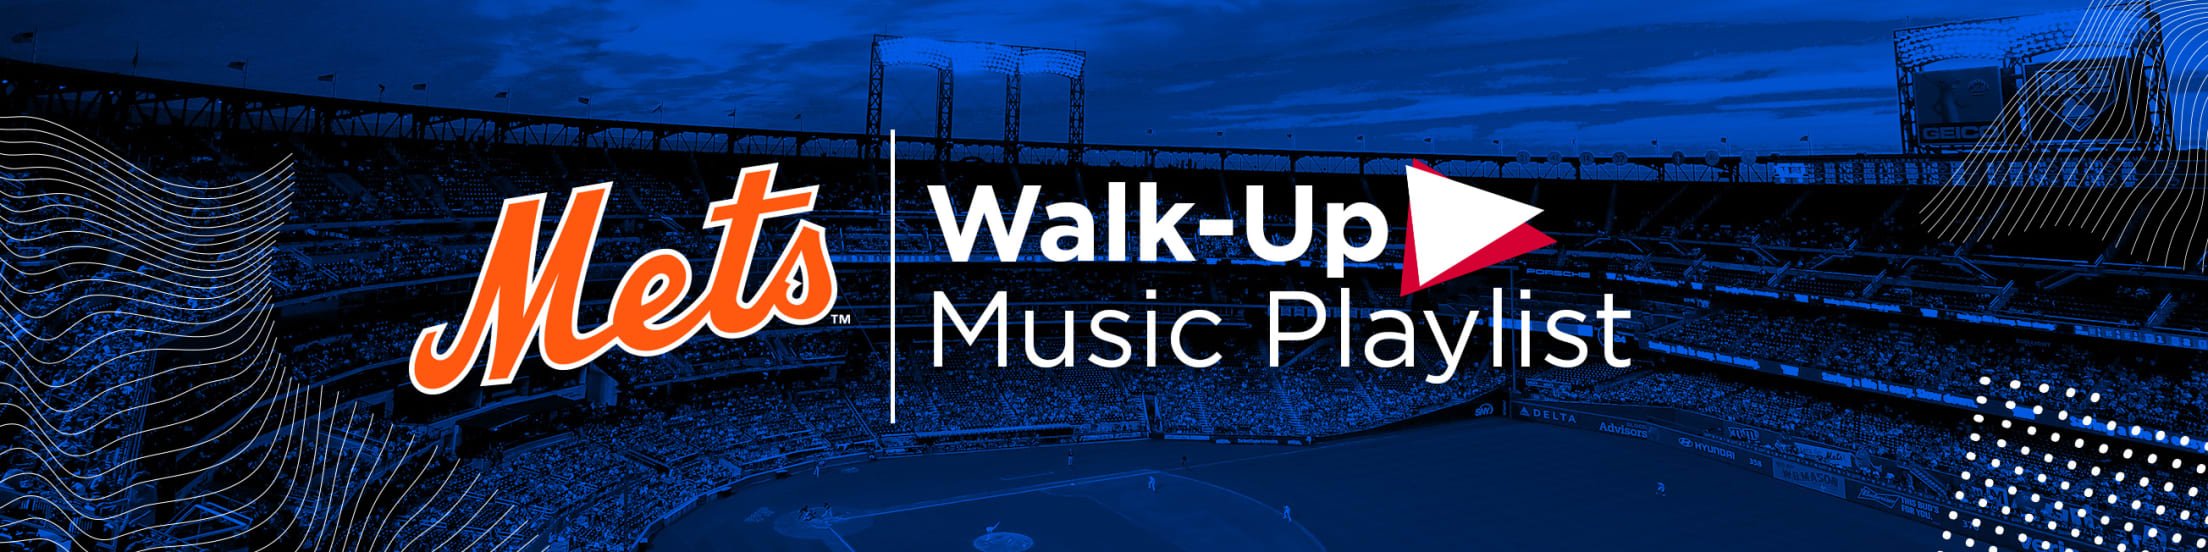 Mets Player WalkUp Songs New York Mets